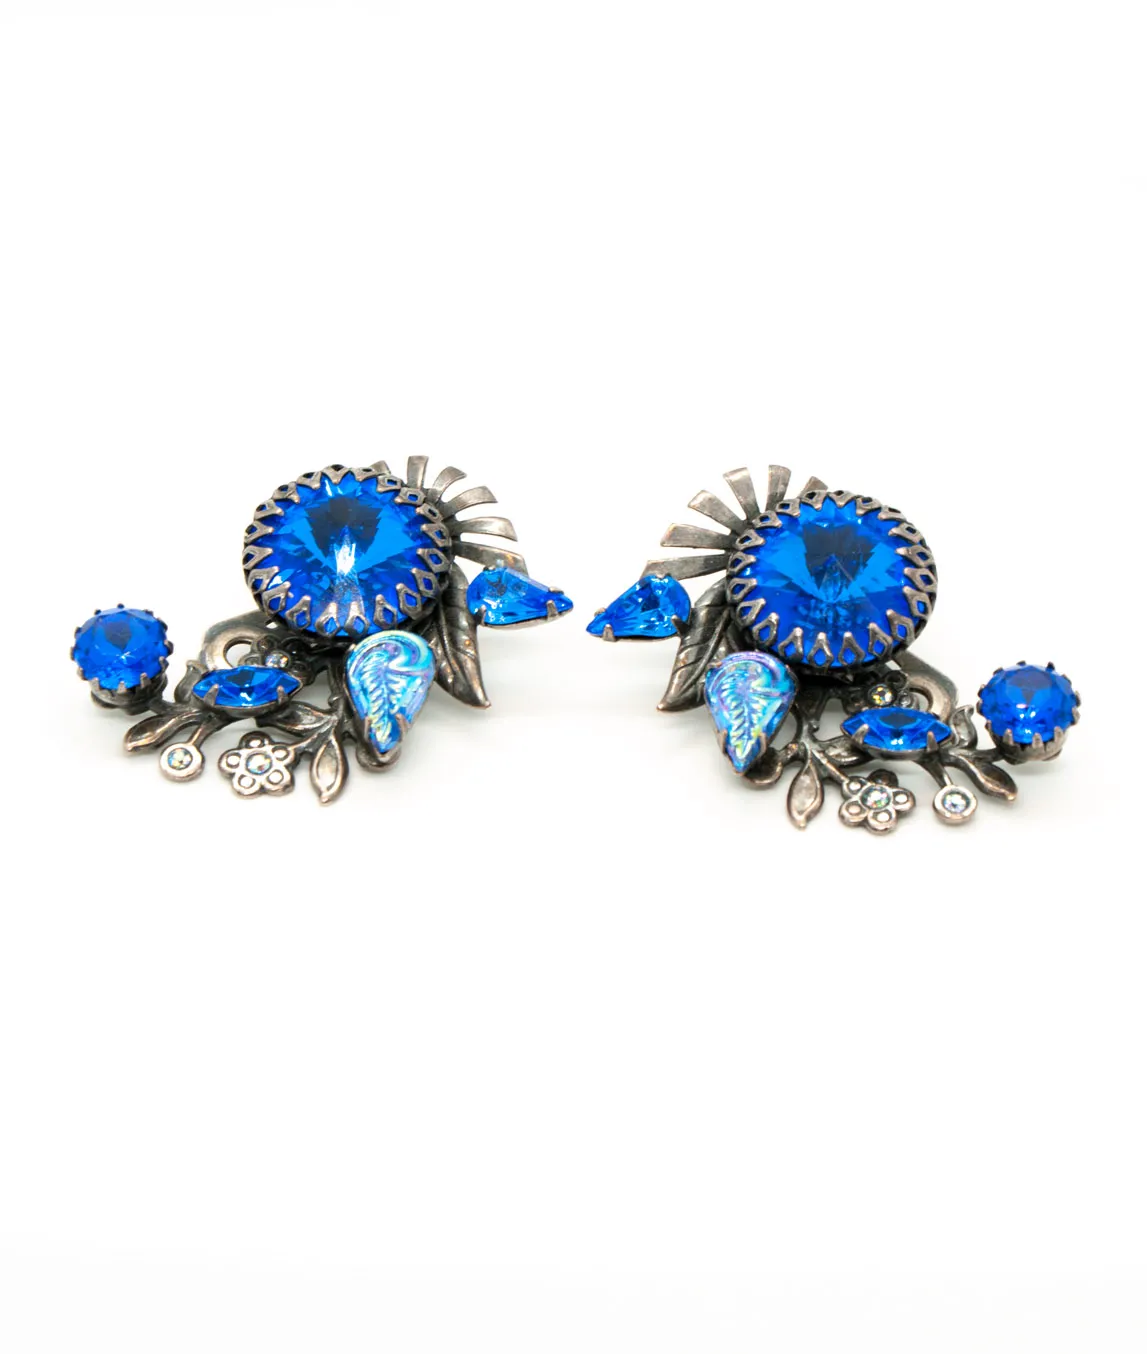 Layered vintage earrings by Askew London